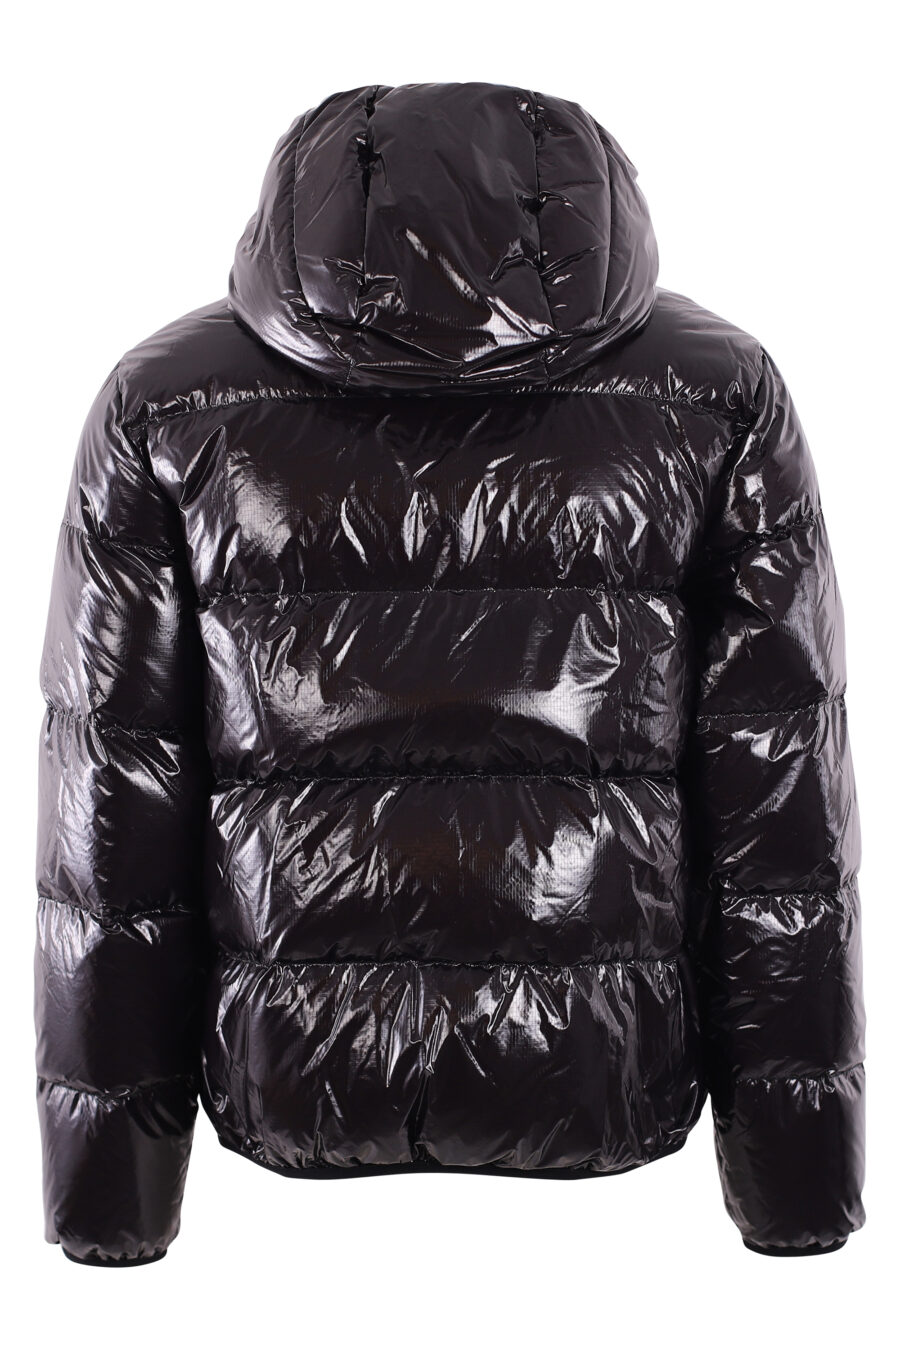 Veste noire brillante avec capuche matelassée à logo blanc - IMG 2891